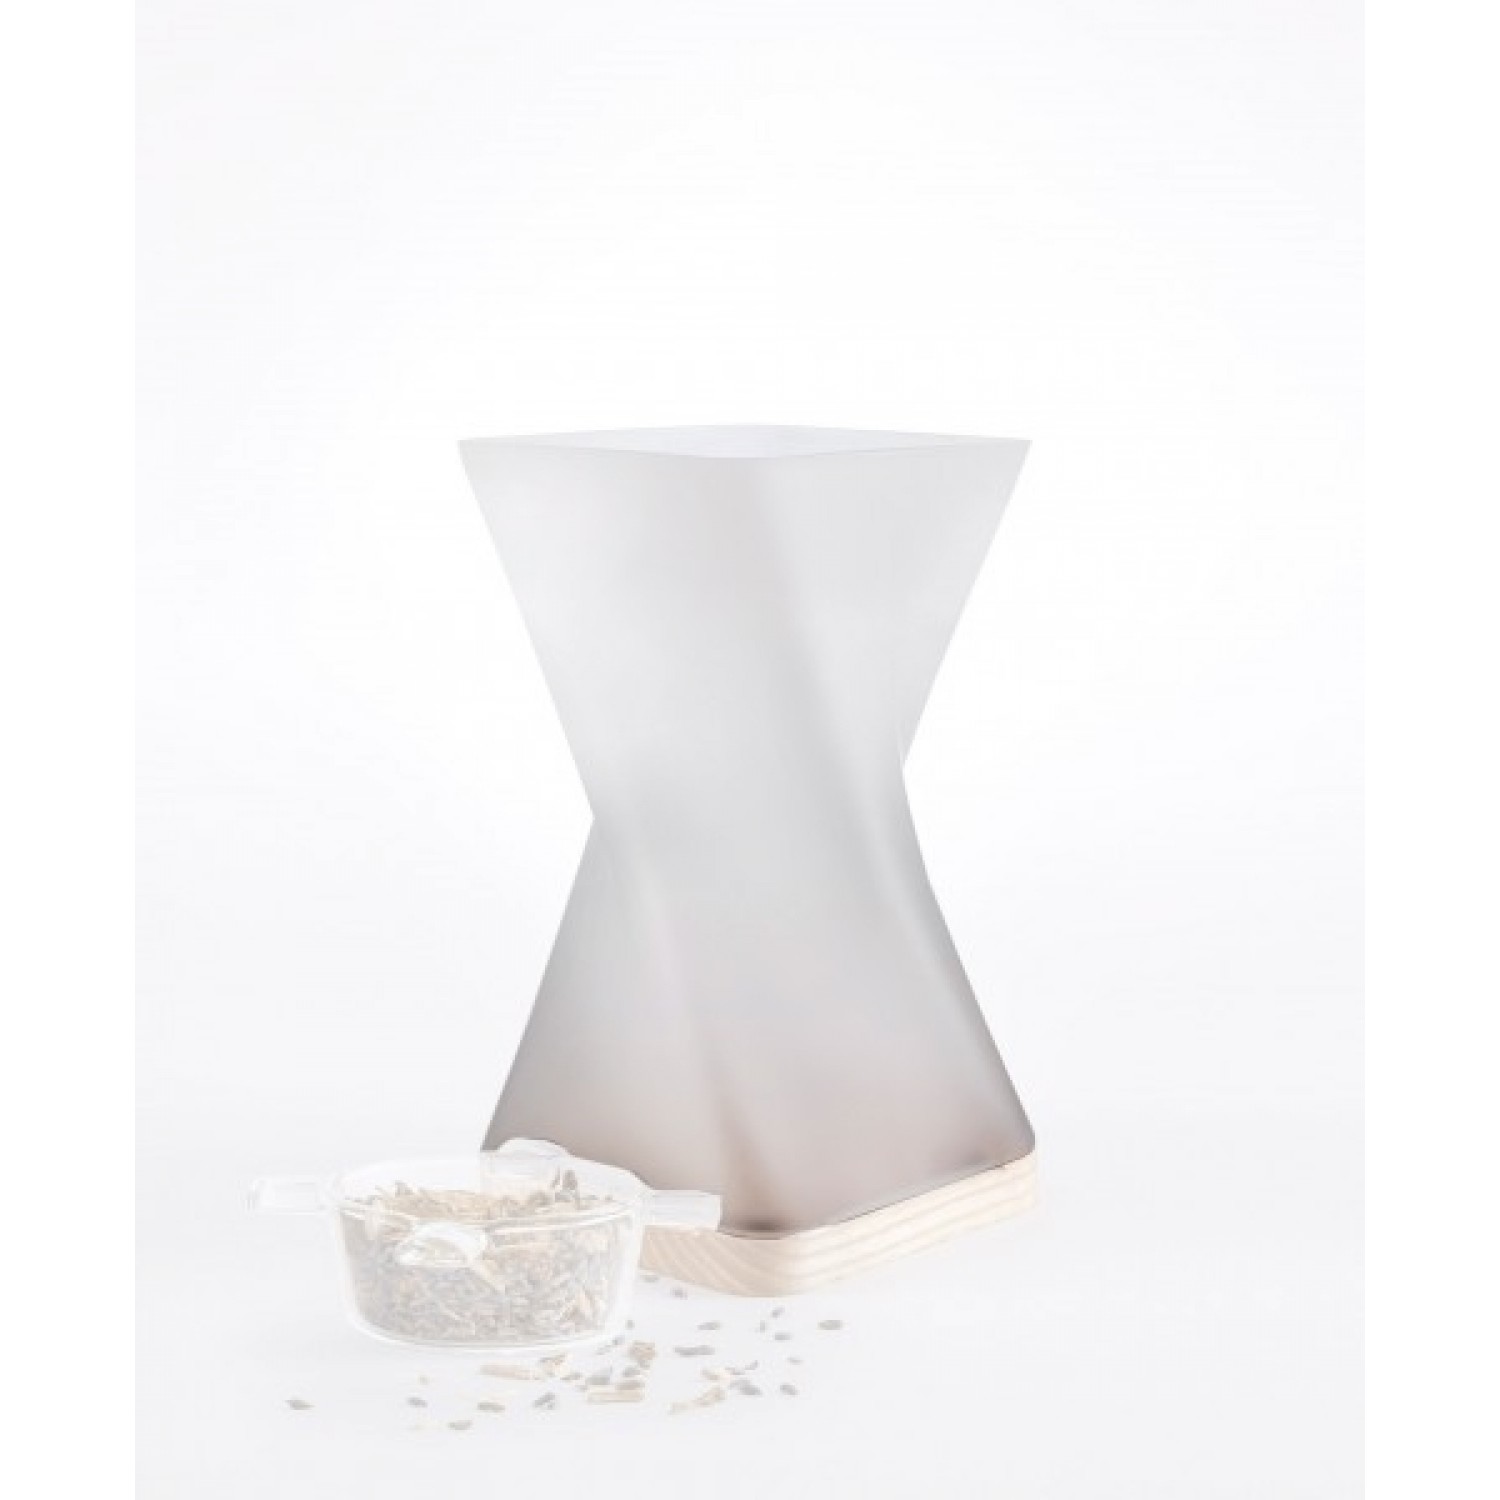 Nature’s Design Spare Glass Chimney for incense burner Odoris